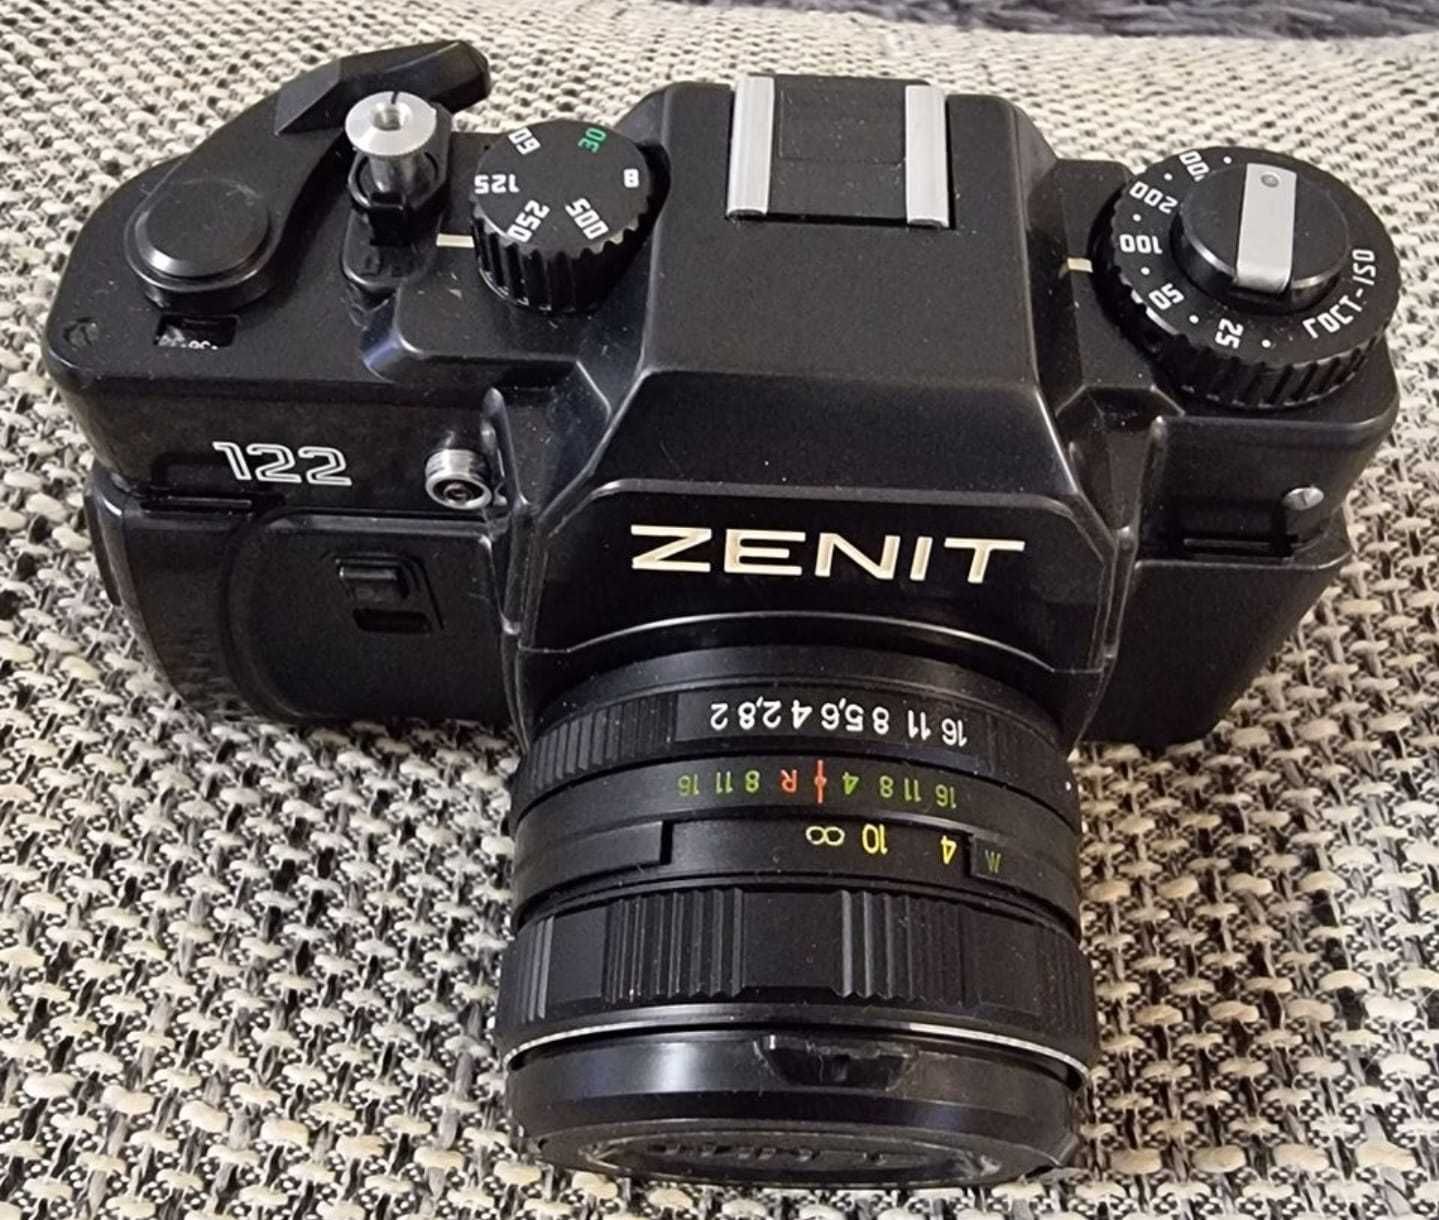 Aparat fotograficzny Zenit 122 komplet z obiektywem